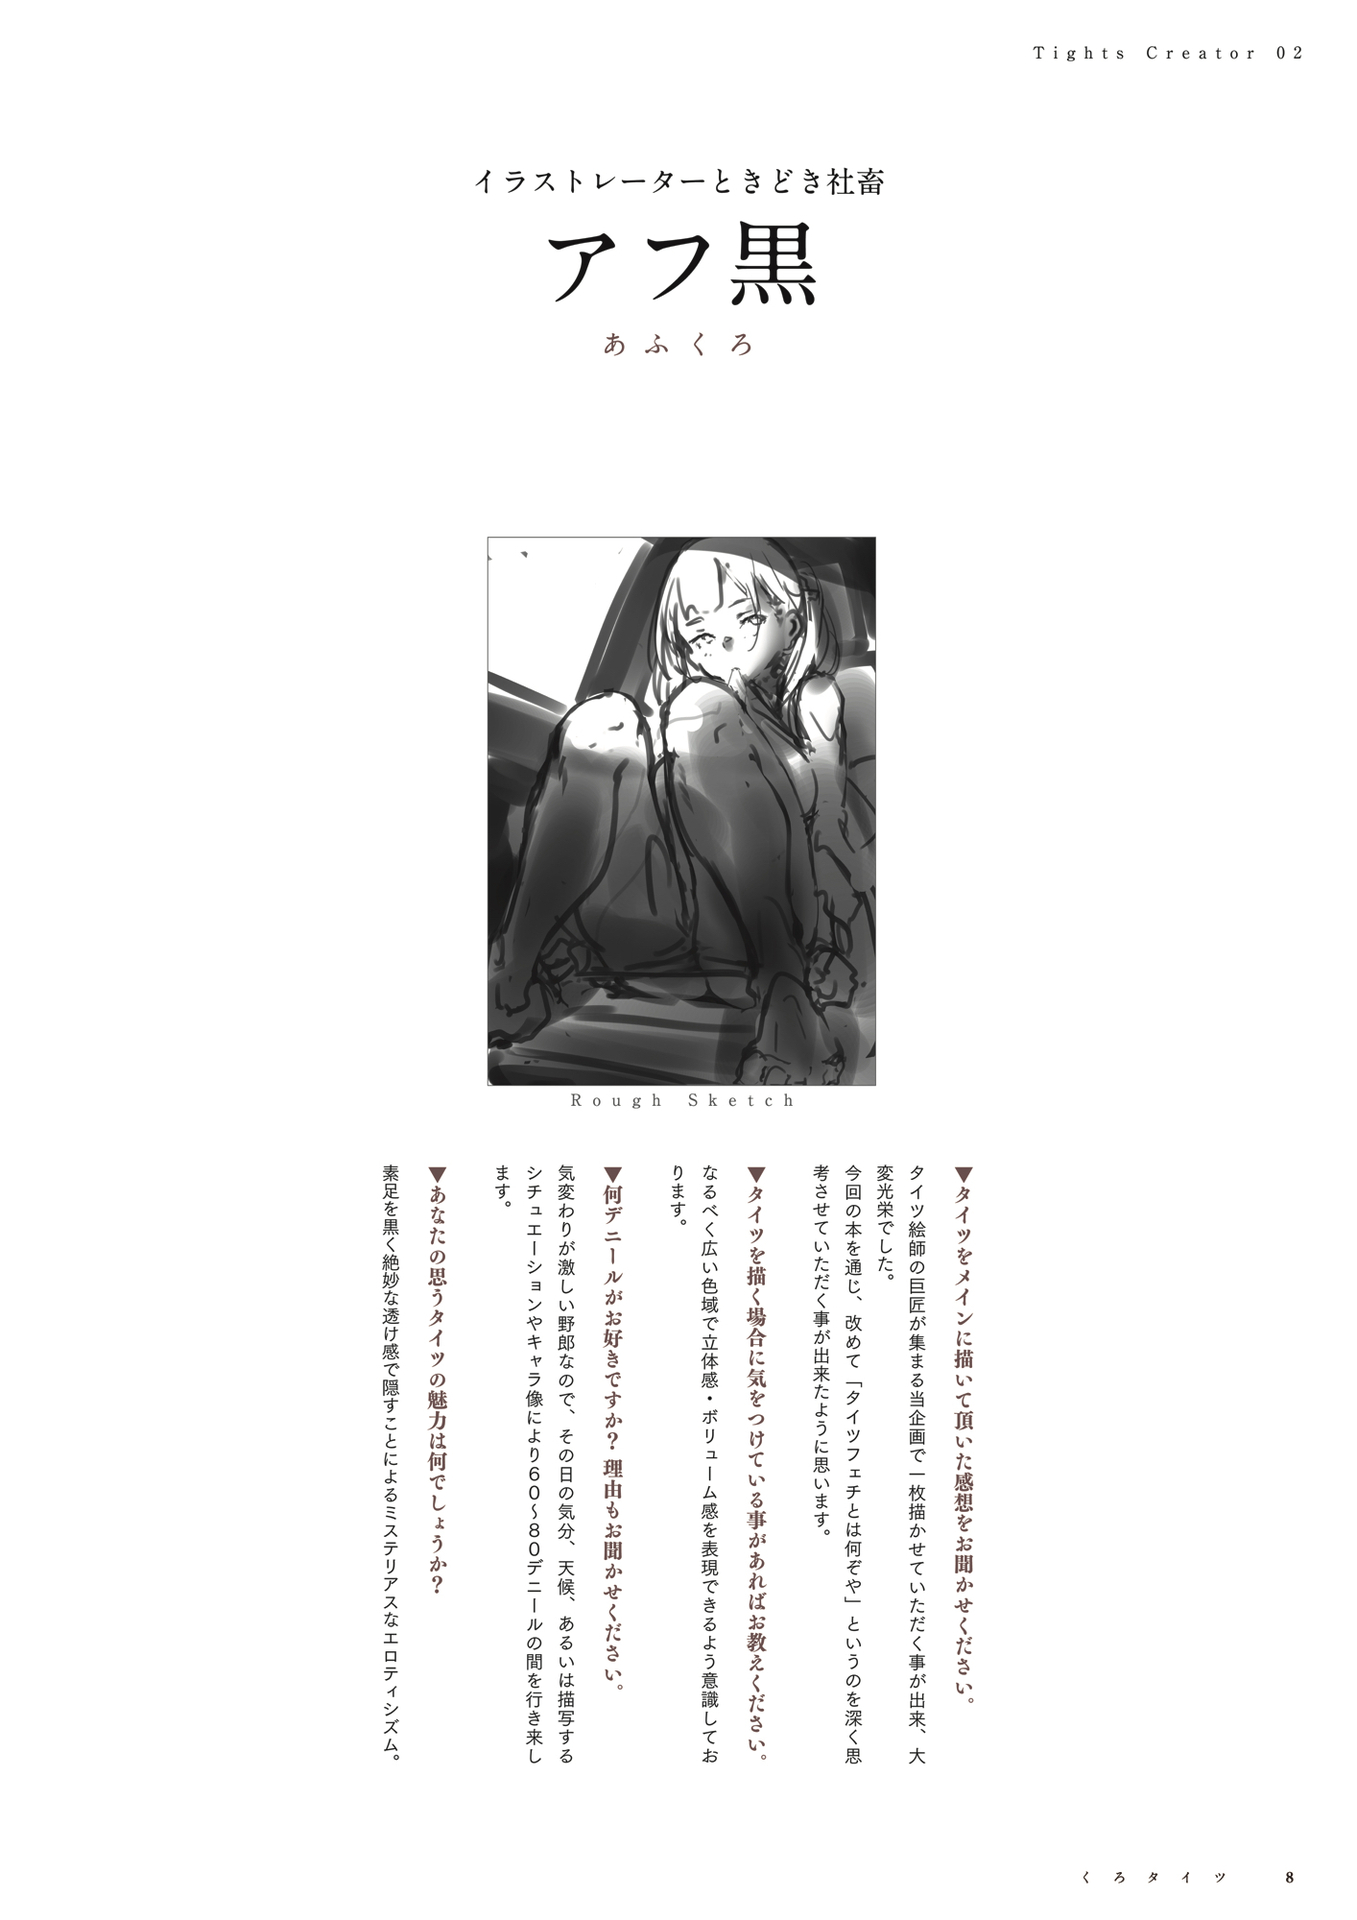 Afukuro Sabaku No Tanuki Digital Version Text 492132